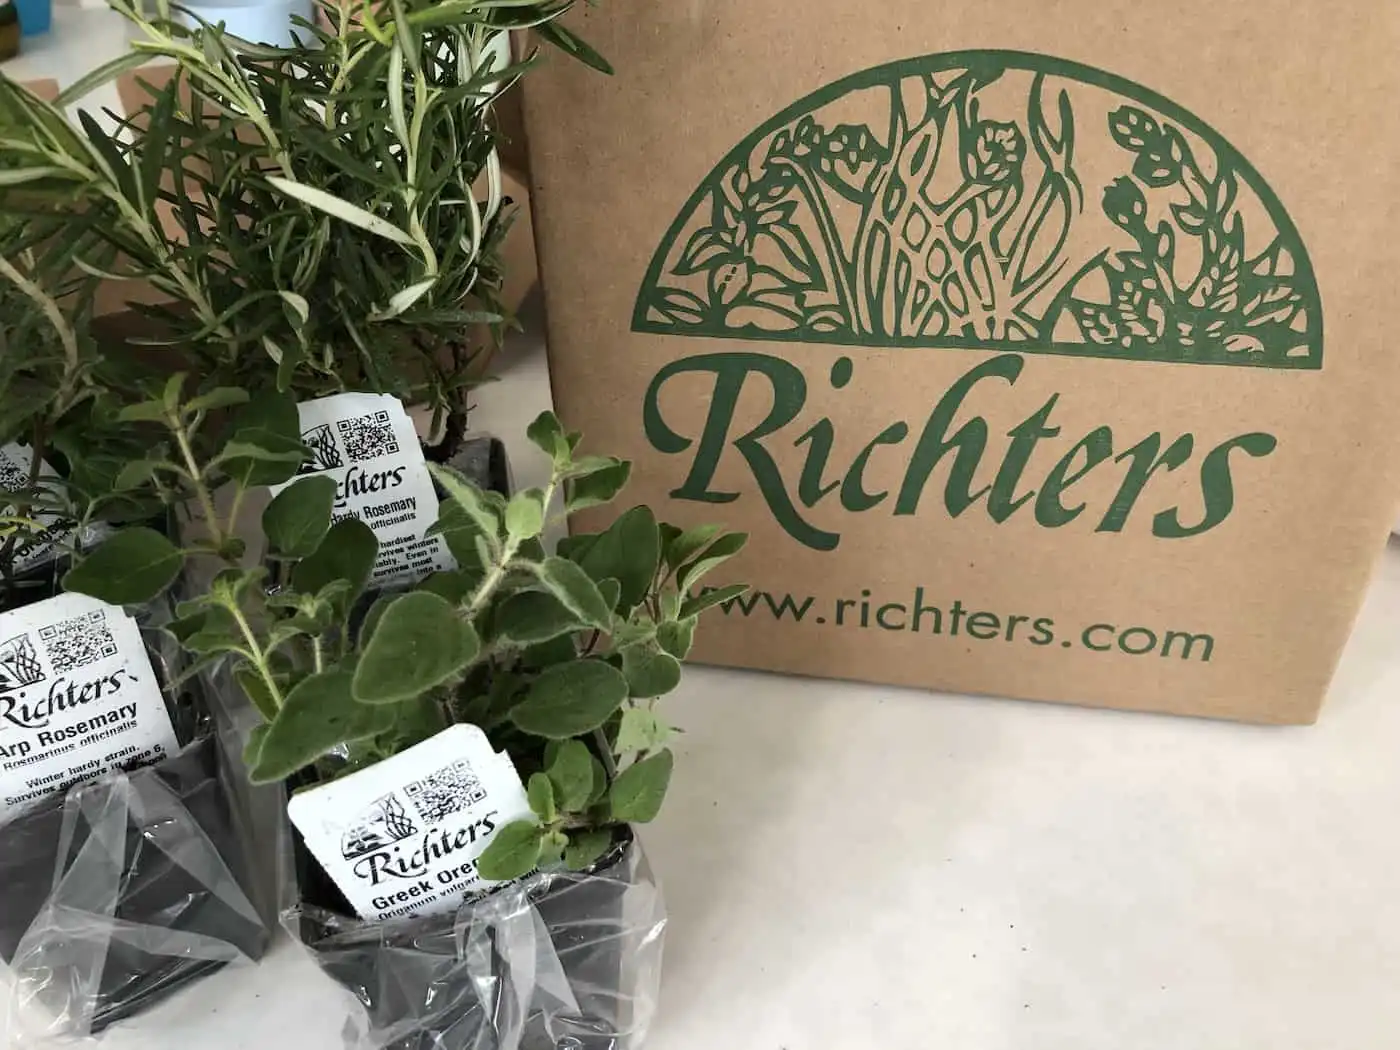 Richter's herbs